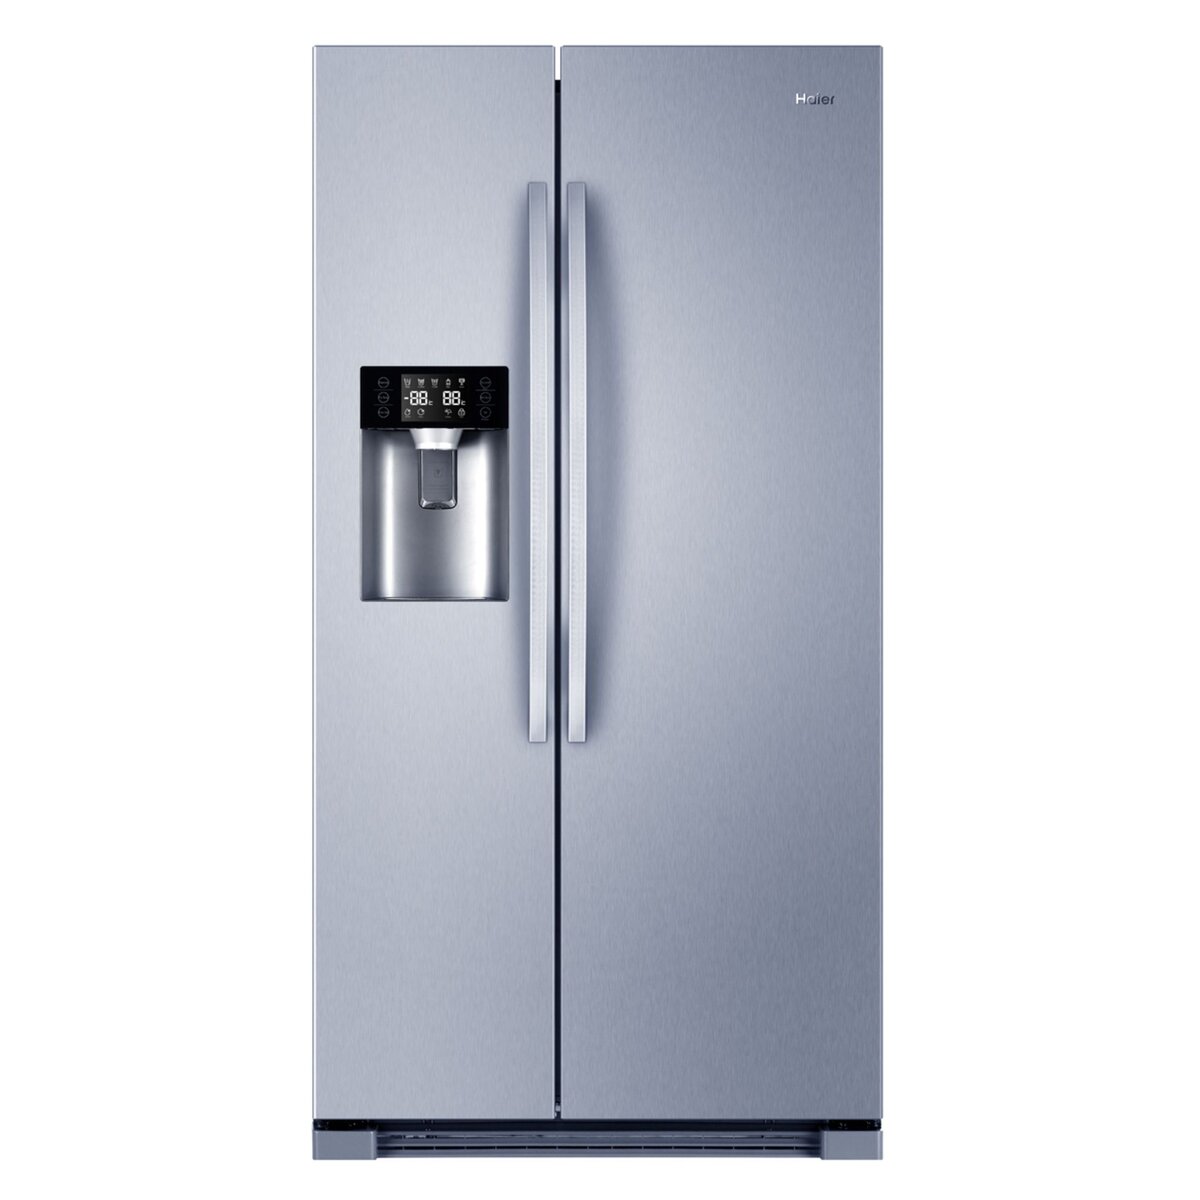 HAIER Réfrigérateur américain HRF-665ISB2, 550 L, Froid No Frost